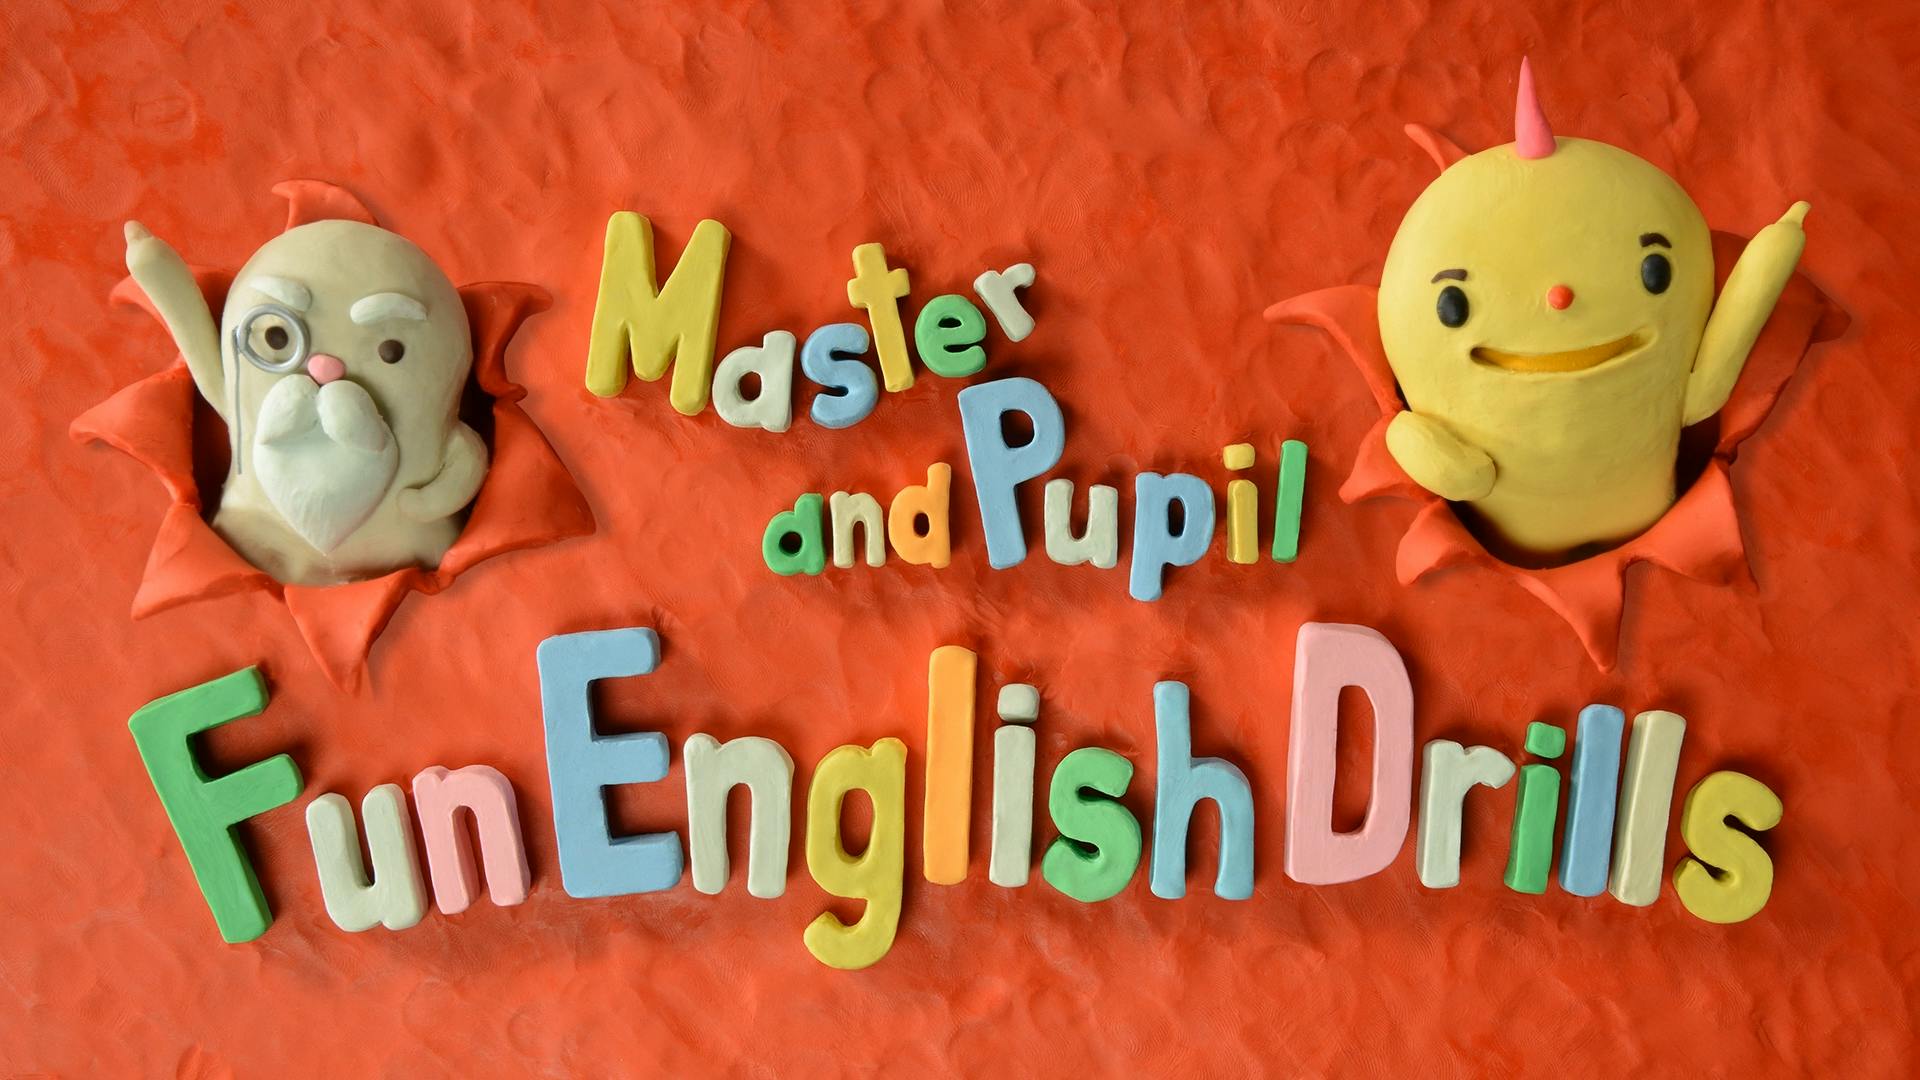 Master and Pupil ~Fun English Drills~